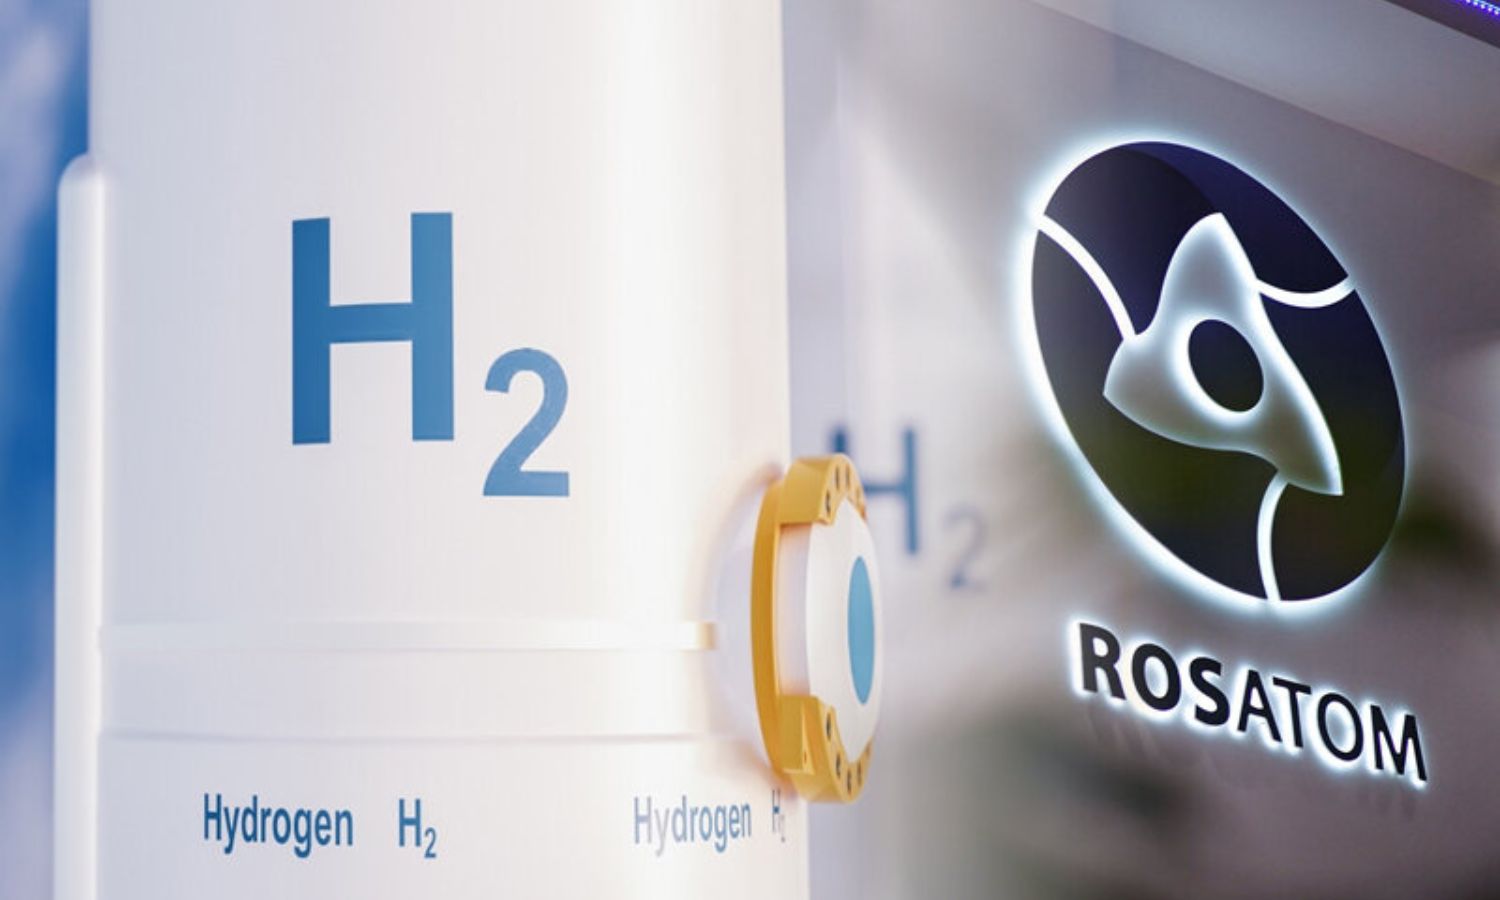 من مشروع أطلقته شركة روساتوم لبناء مجمع لإنتاج الهيدروجين- 14 من شباط 2022 (رساتوم/ إكس)